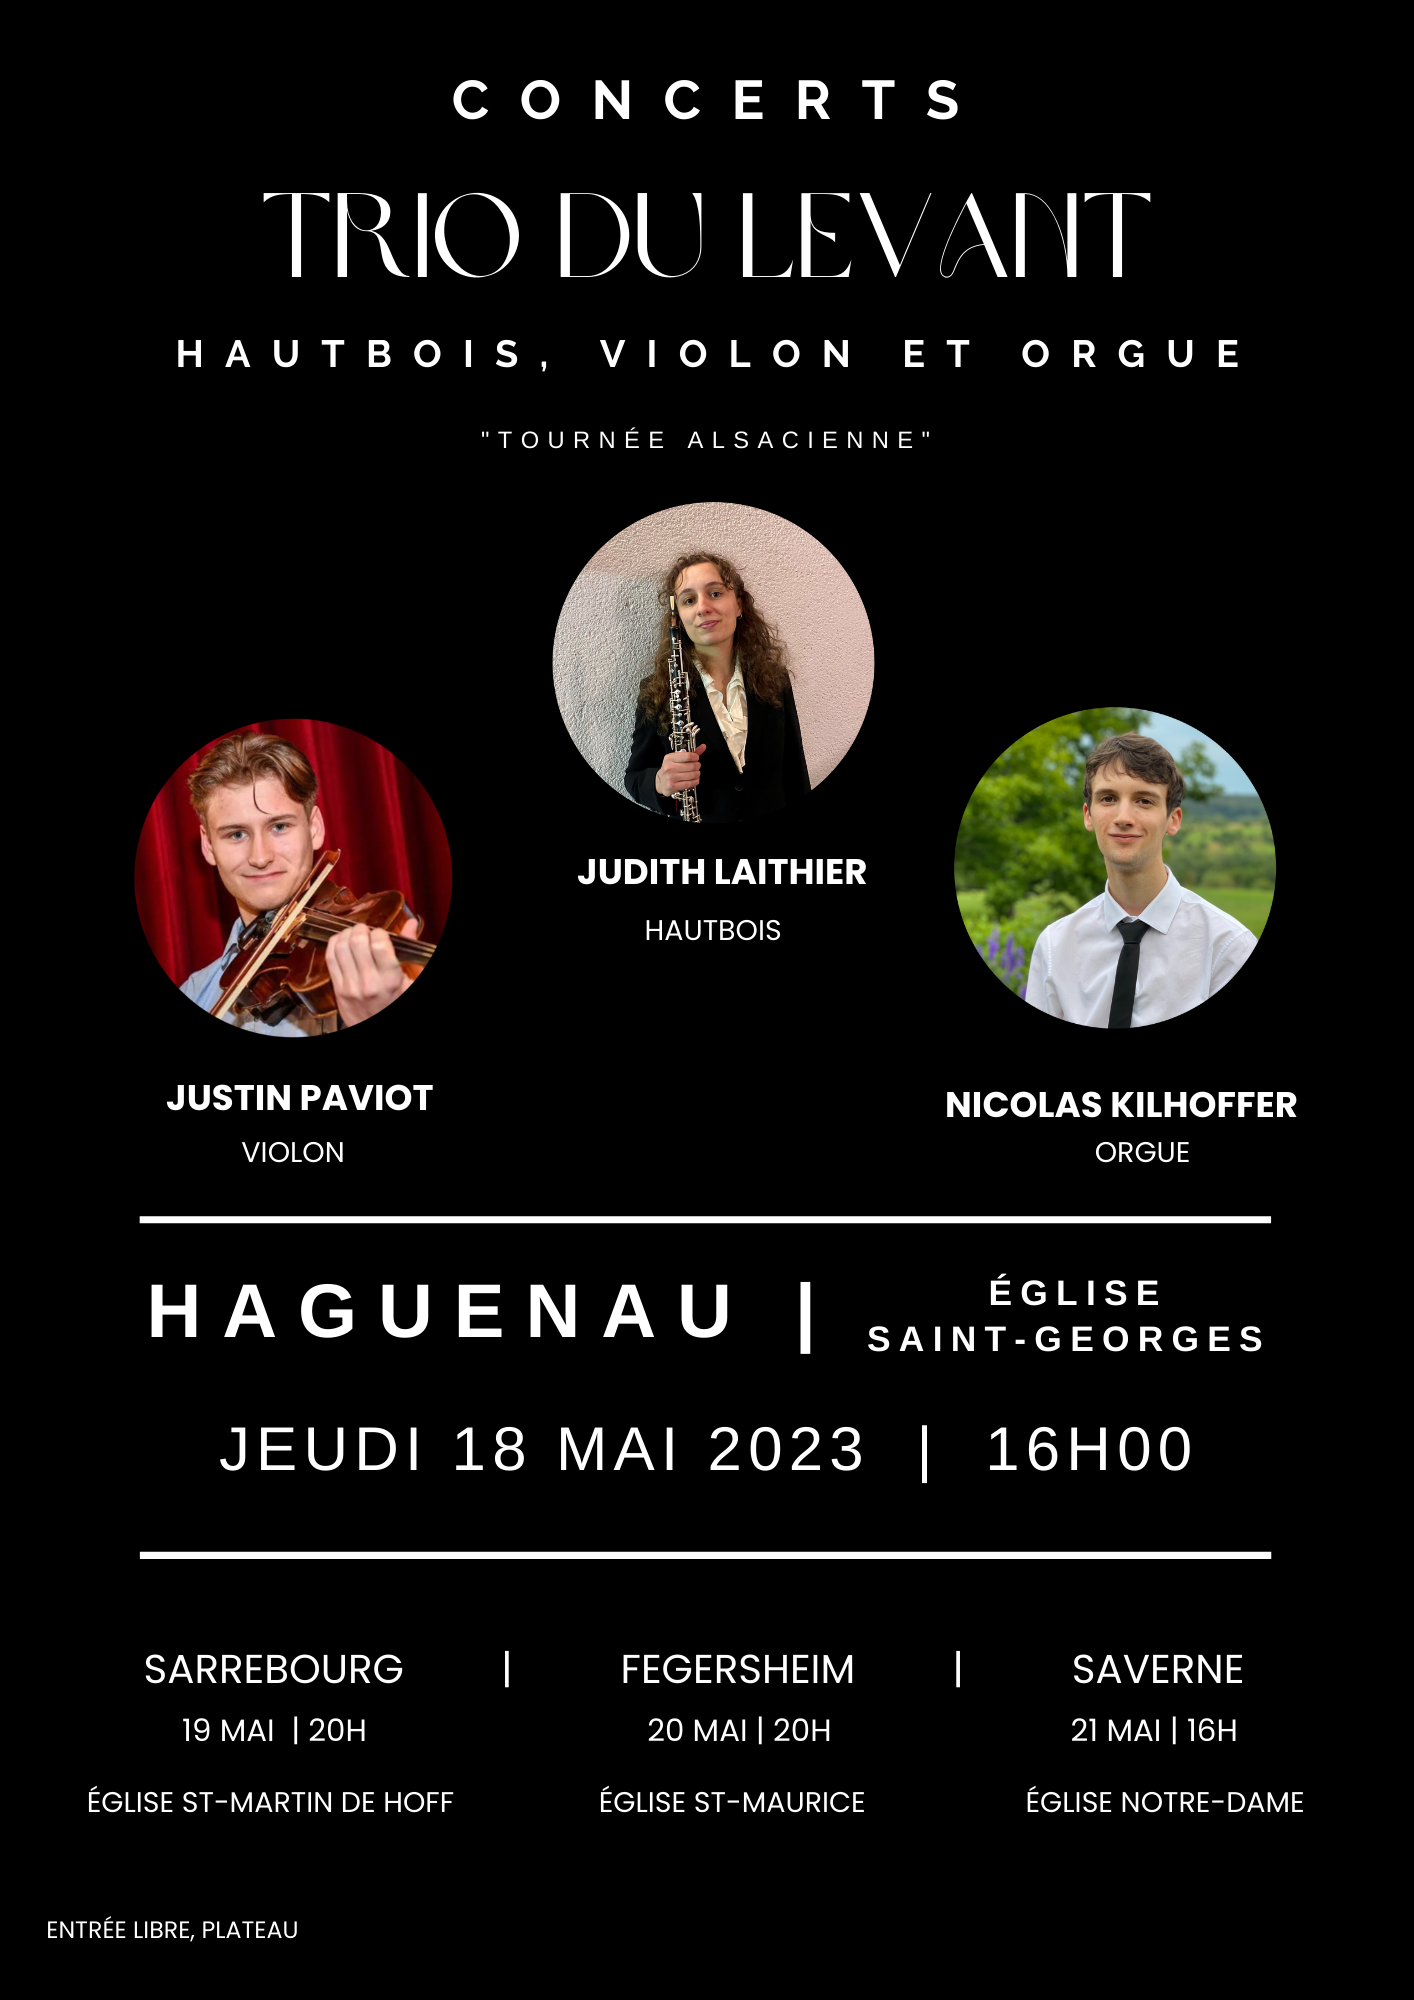 Concert hautbois, violon et orgue par le Trio du Levant à l'église Saint-Georges de Haguenau